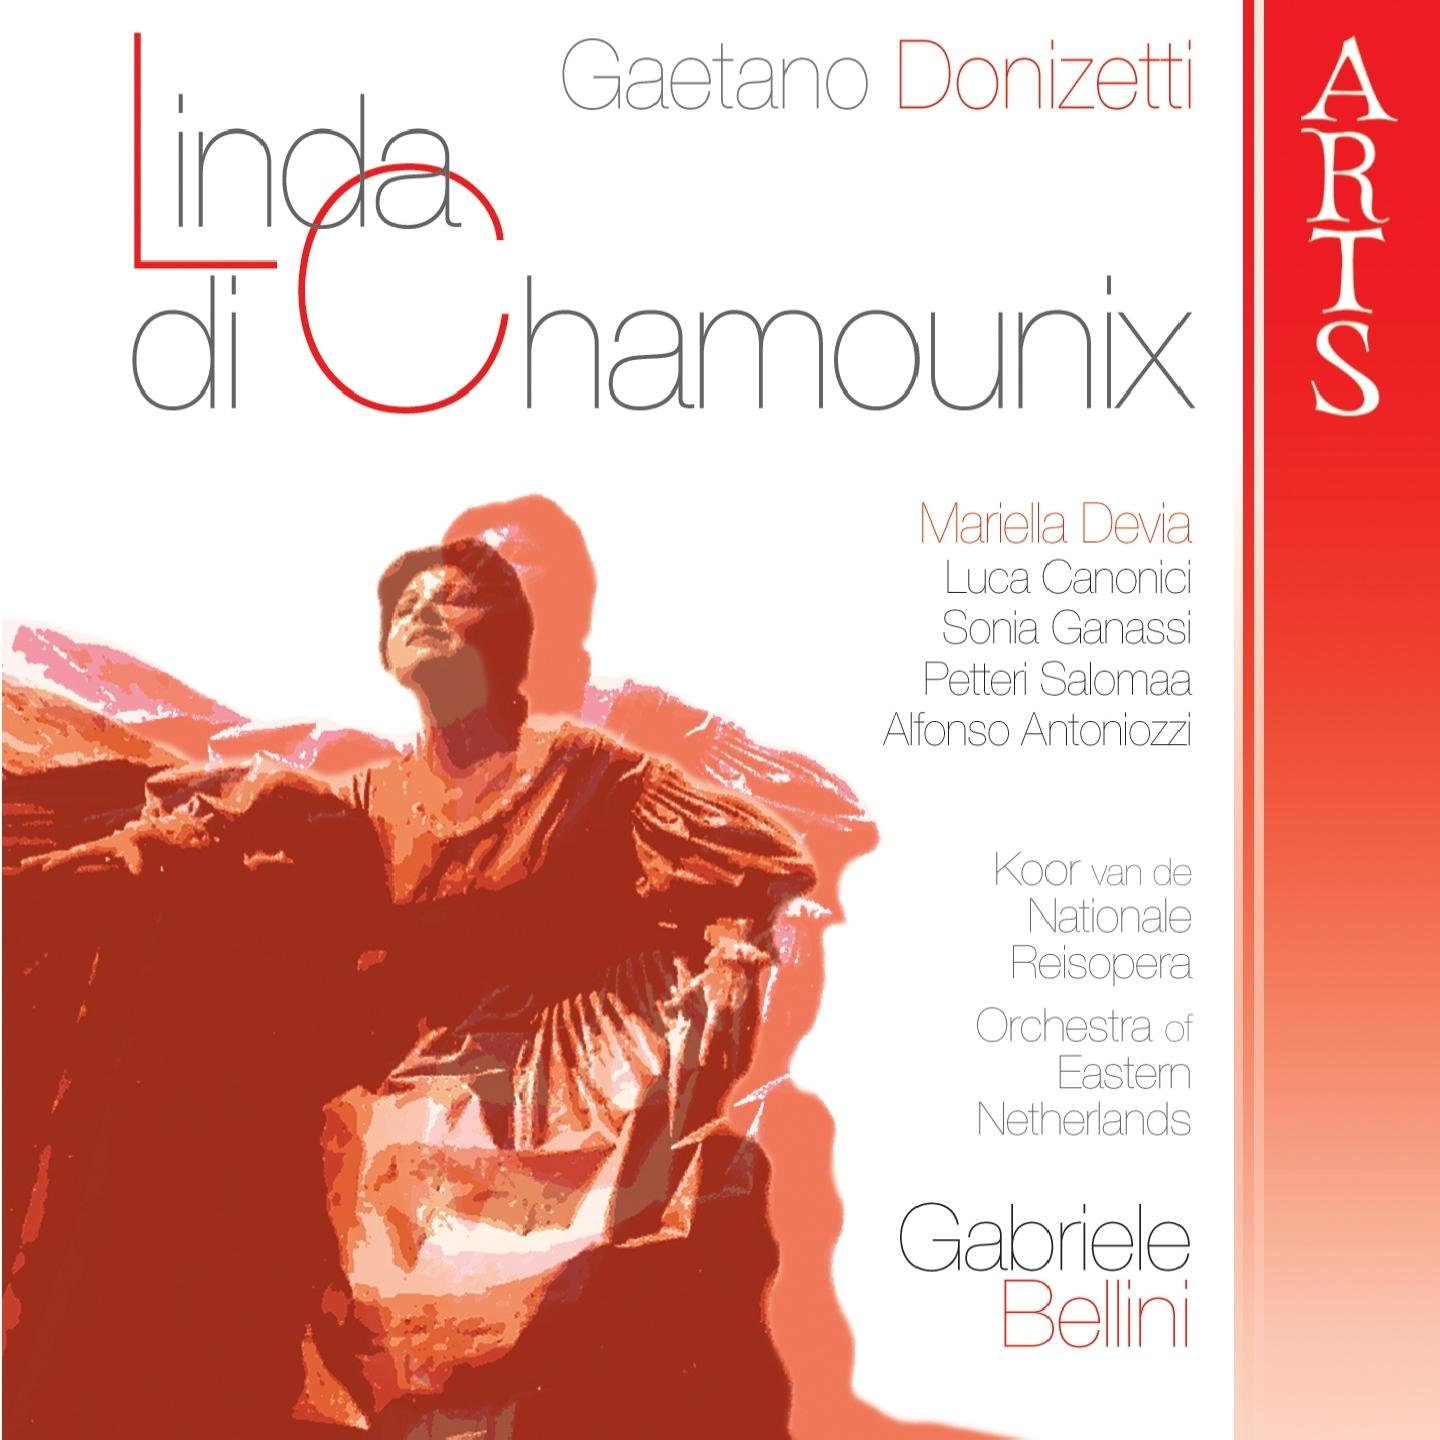 Linda di Chamounix: Act II  Parigi, Scena e Duetto " Ah! Dimmi... dimmi, io t amo..."